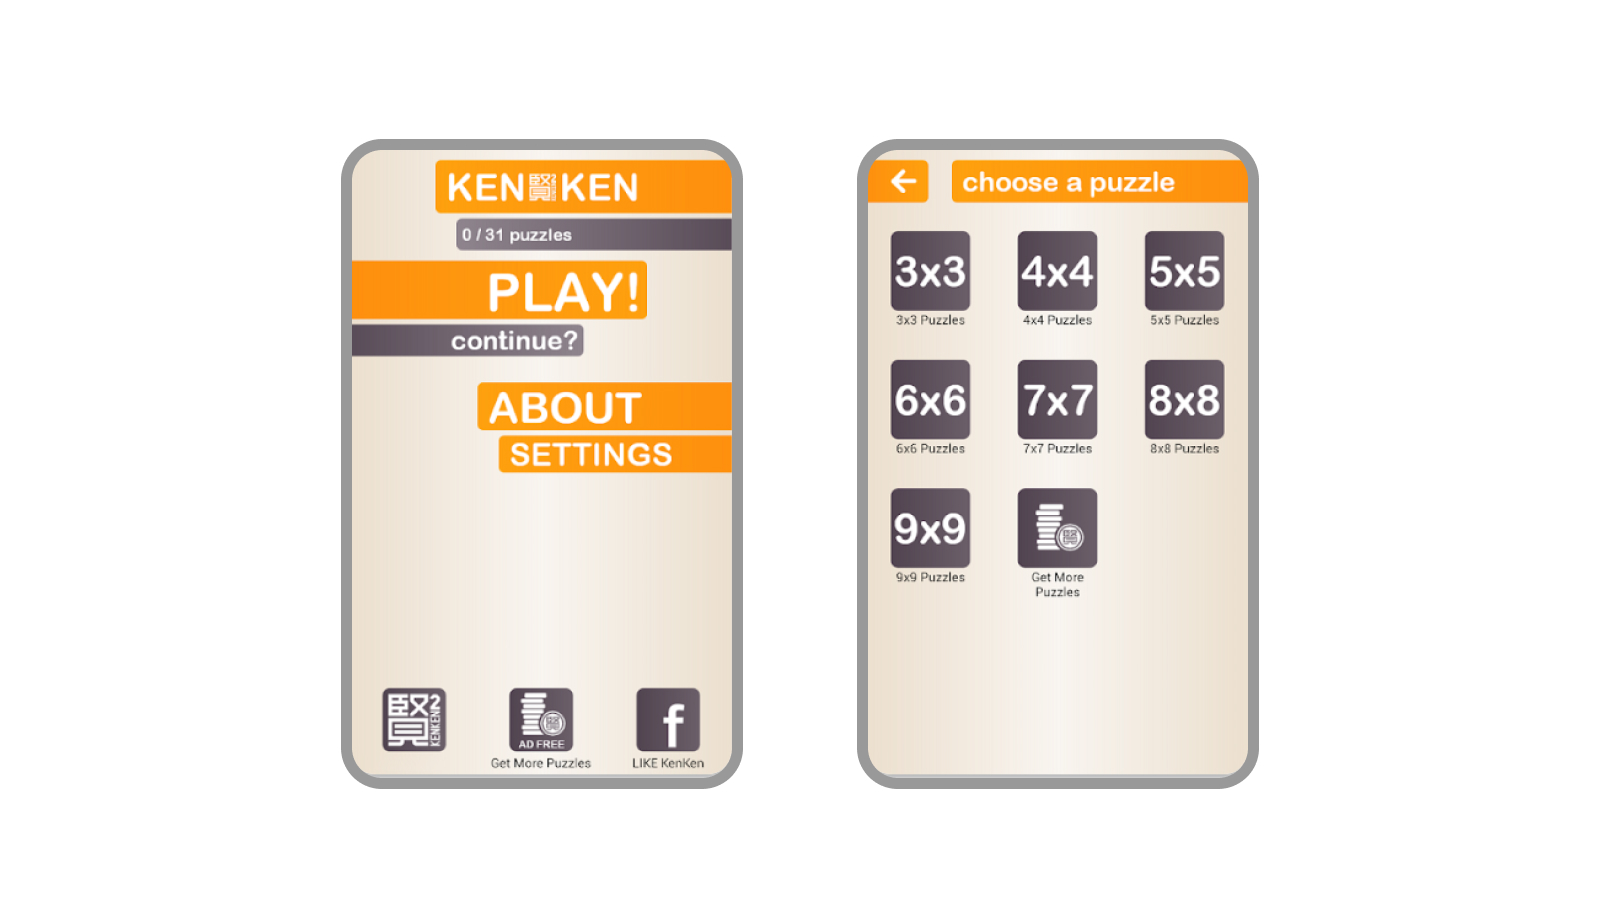 Пользовательский интерфейс мобильной игры KENKEN, где на первом экране видны различные кнопки, такие как играть, описание, настройки и продолжить игру, а на втором экране виден набор кнопок с размерами игрового поля от 3x3 до 9x9 и кнопки получить больше пазлов, которая есть и на первом экране.